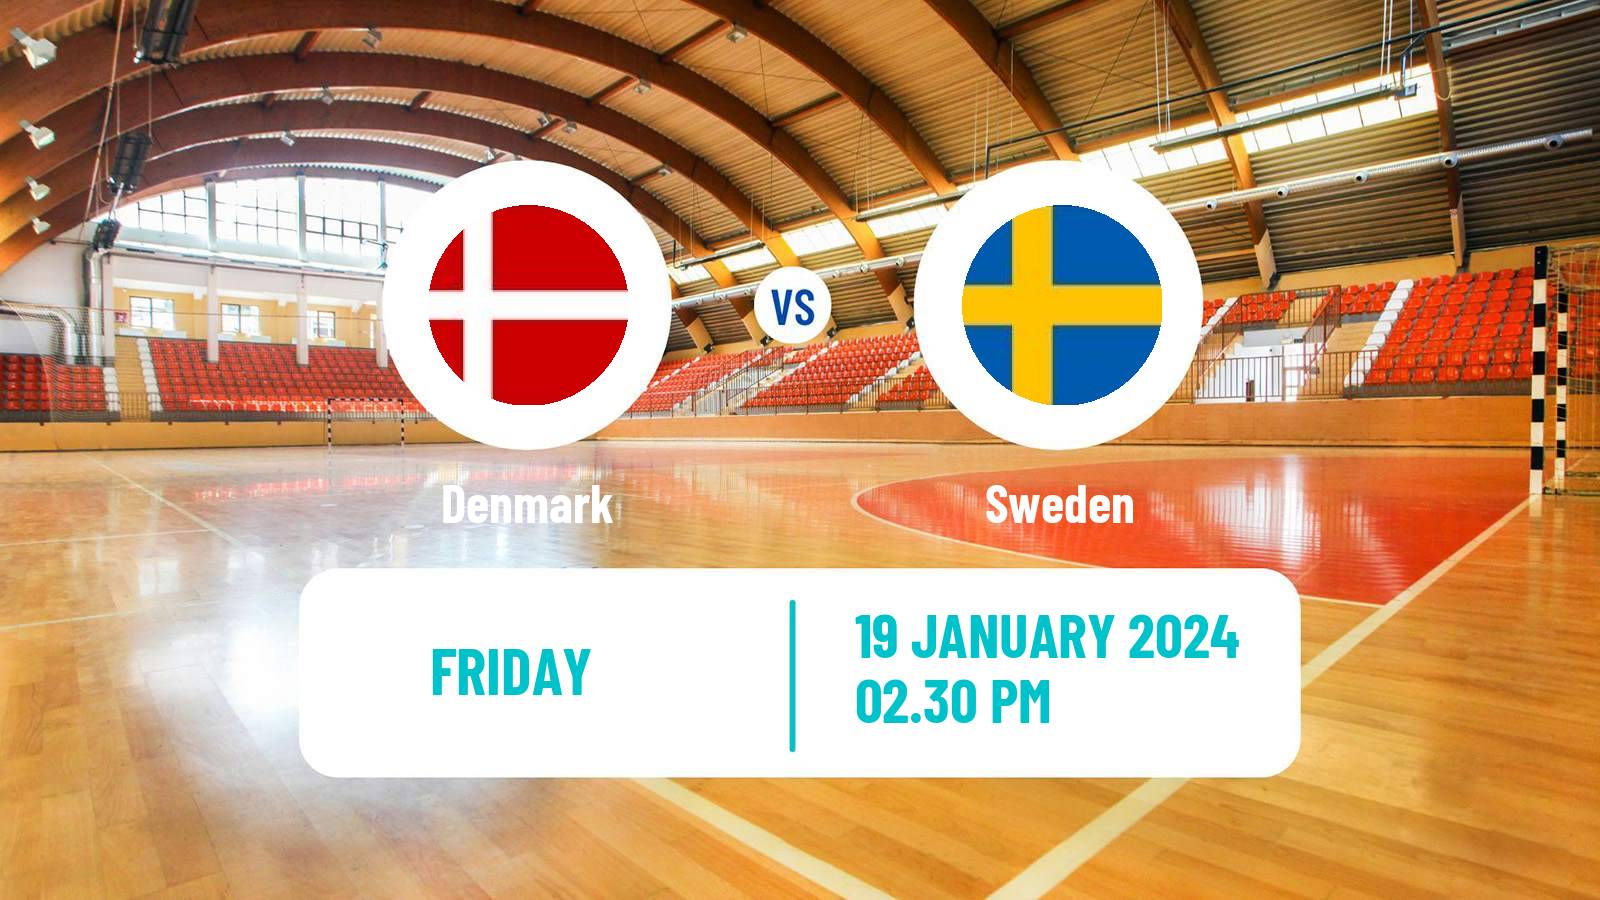 Handball Handball European Championship Denmark - Sweden